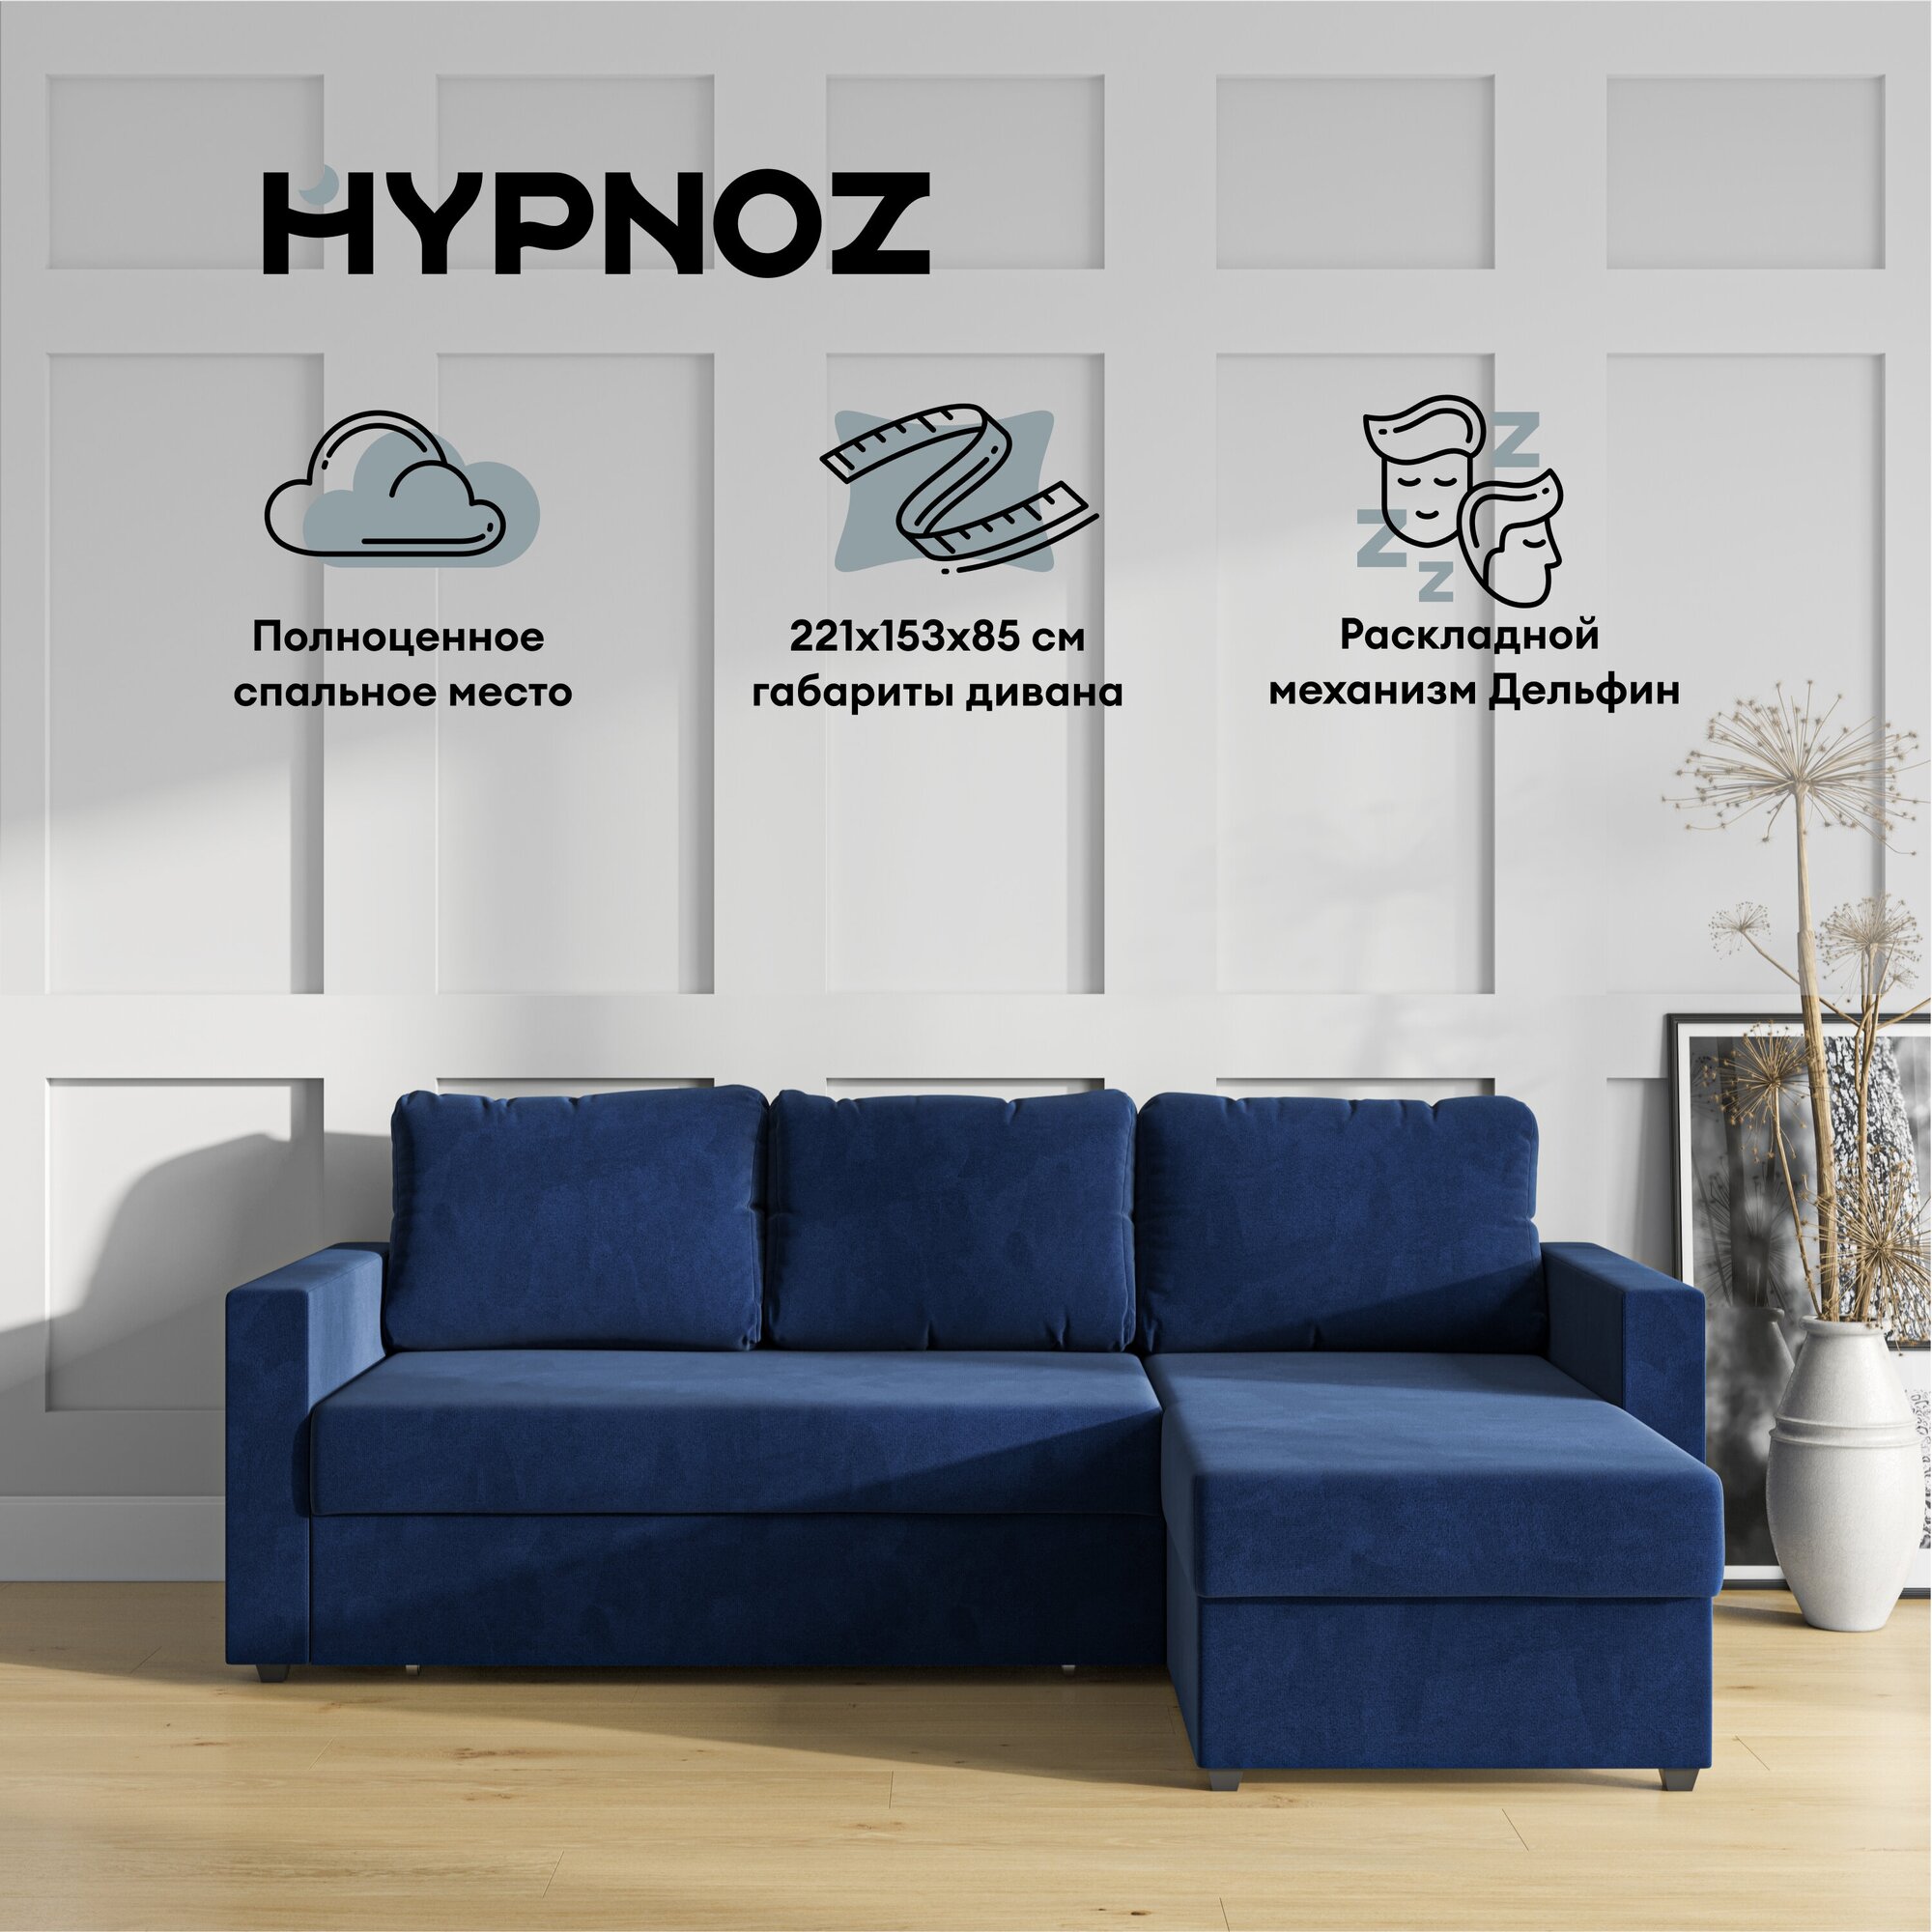 Угловой диван-кровать, HYPNOZ Denver, механизм Дельфин, Синий, 221х153х85 см